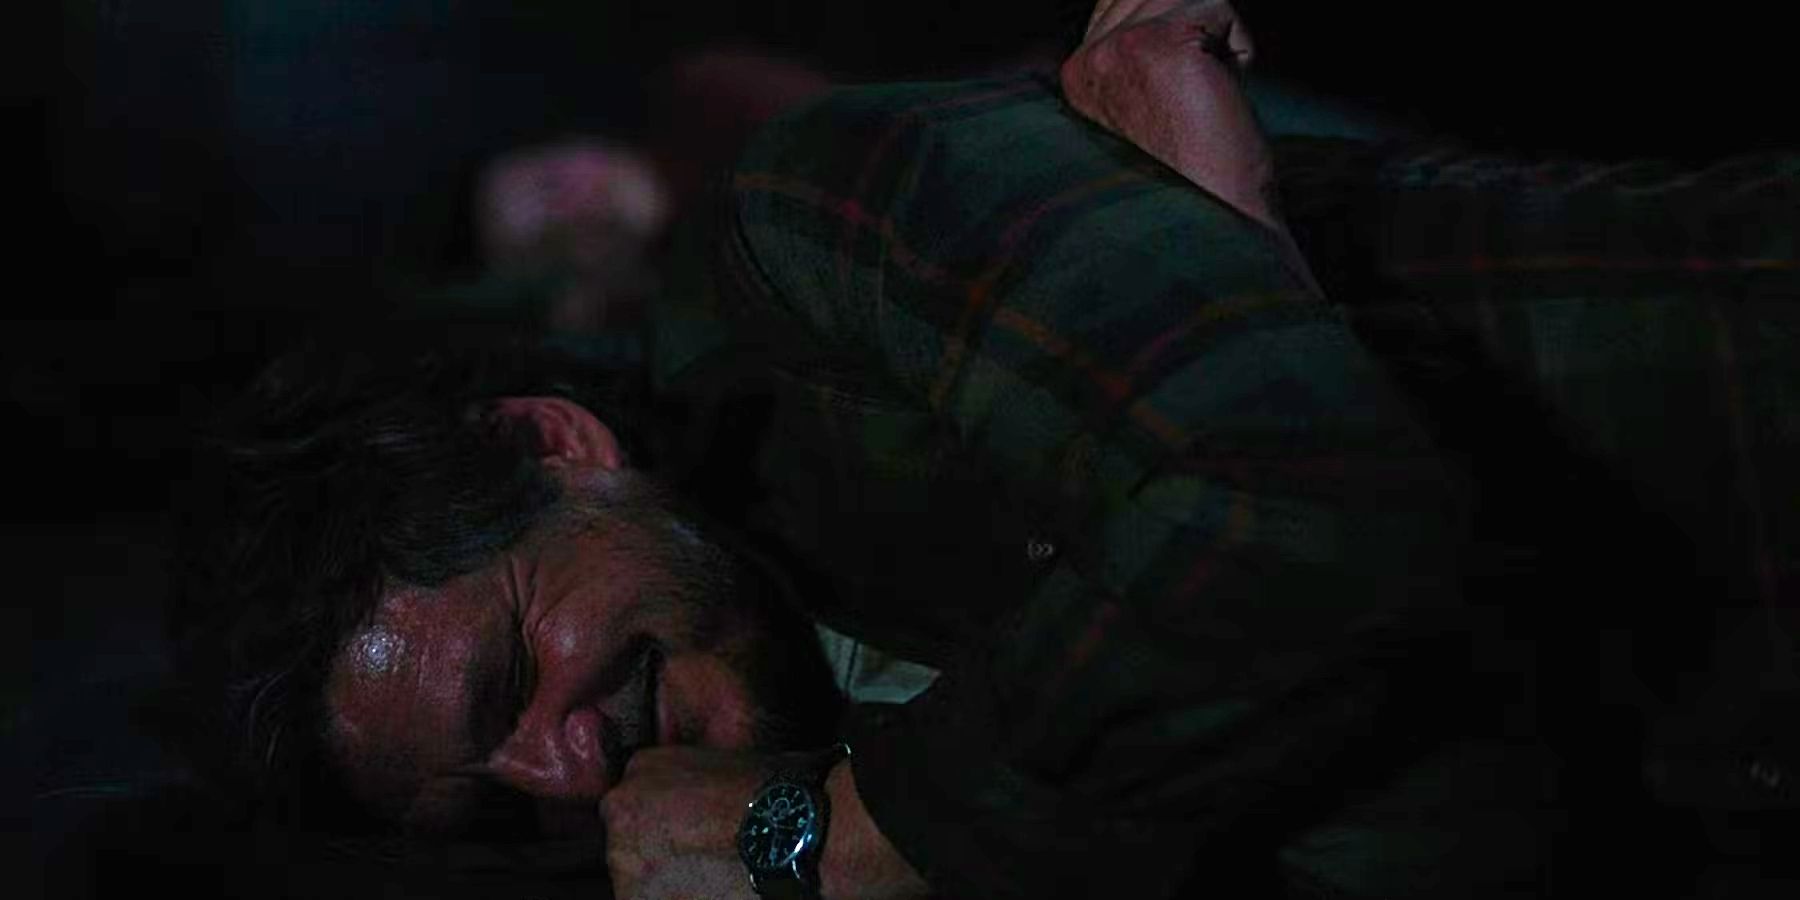 Joel laughing at Ellie's joke in The Last of Us episode 4